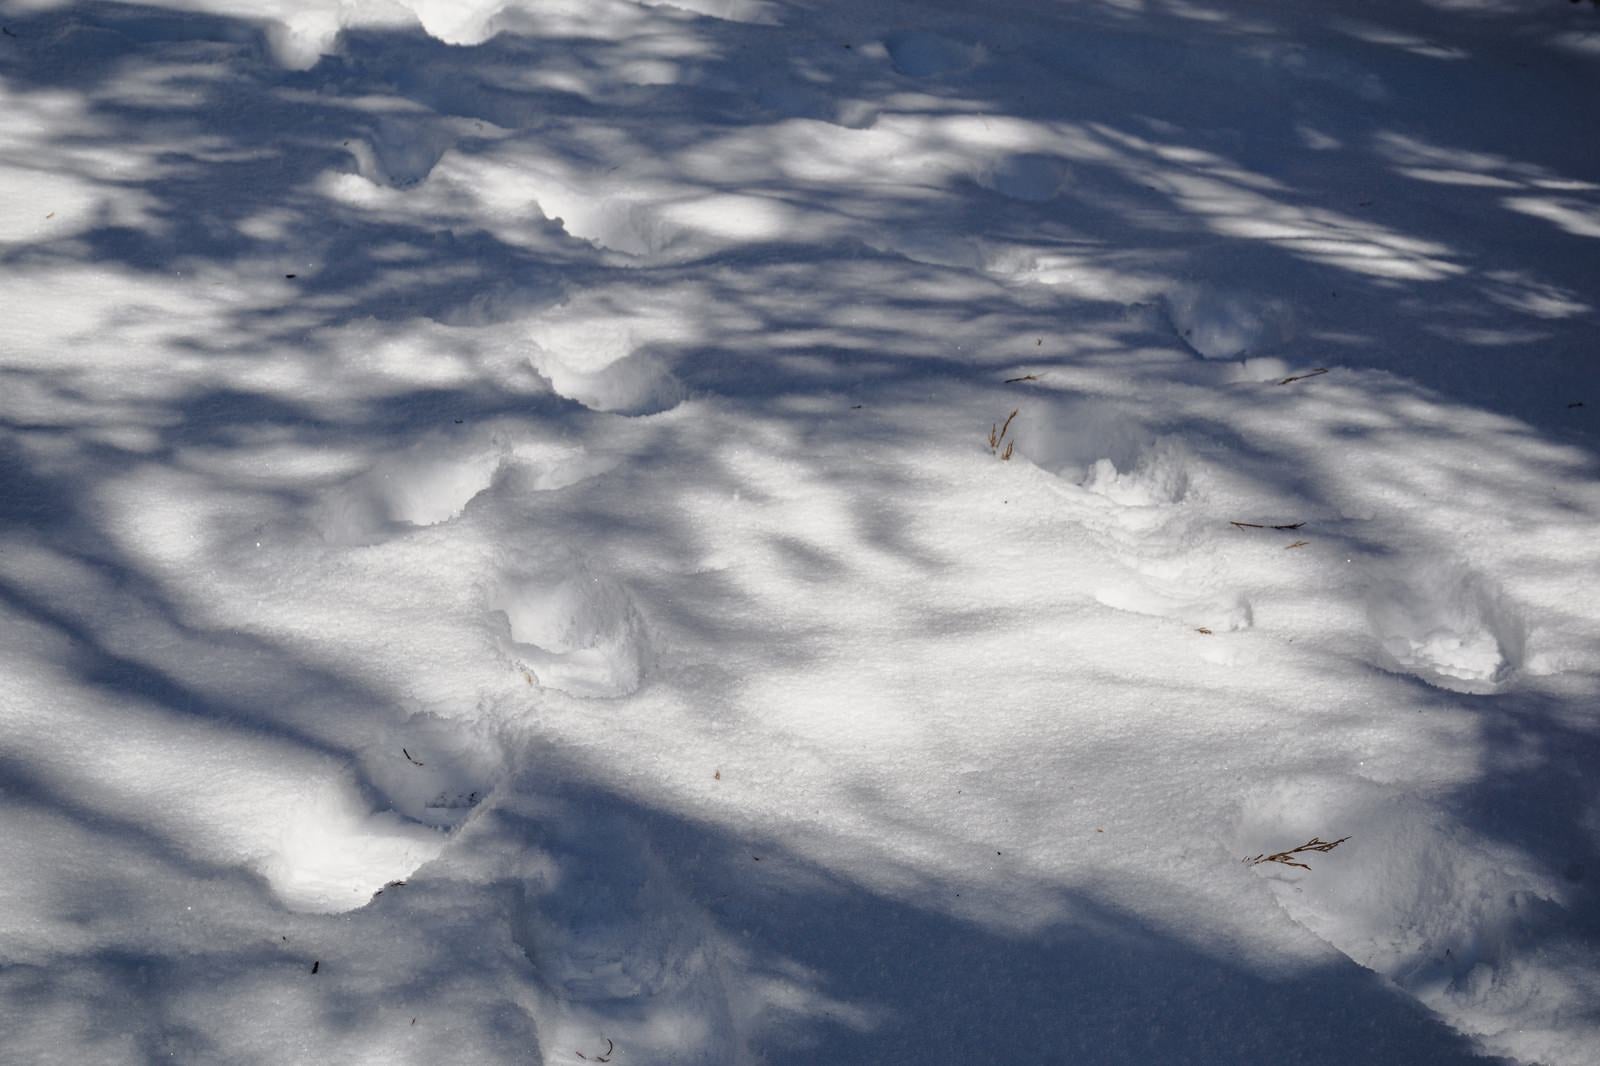 「木々の影と足跡が模様を描く雪上の様子」の写真